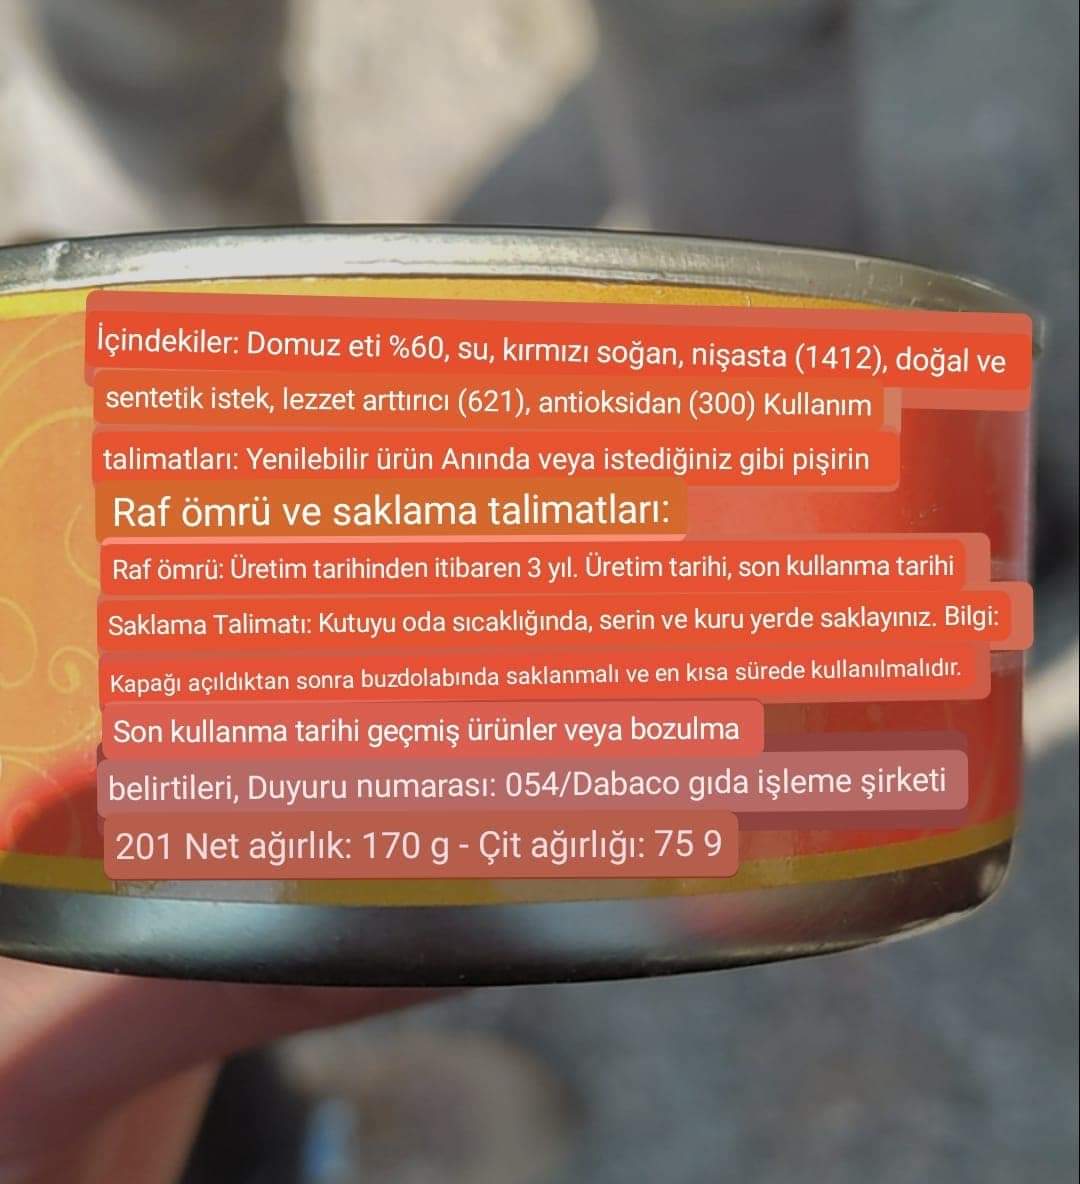 ALINTI
Bugün yardım dağıtırken yurt dışından gelen konservelerde böyle bir durum ile karşılaştık:
%60 domuz eti

19.02.2023
Adana/Yumurtalık

#depremzedesoruyor #Adana #deprem #domuzeti #yardım